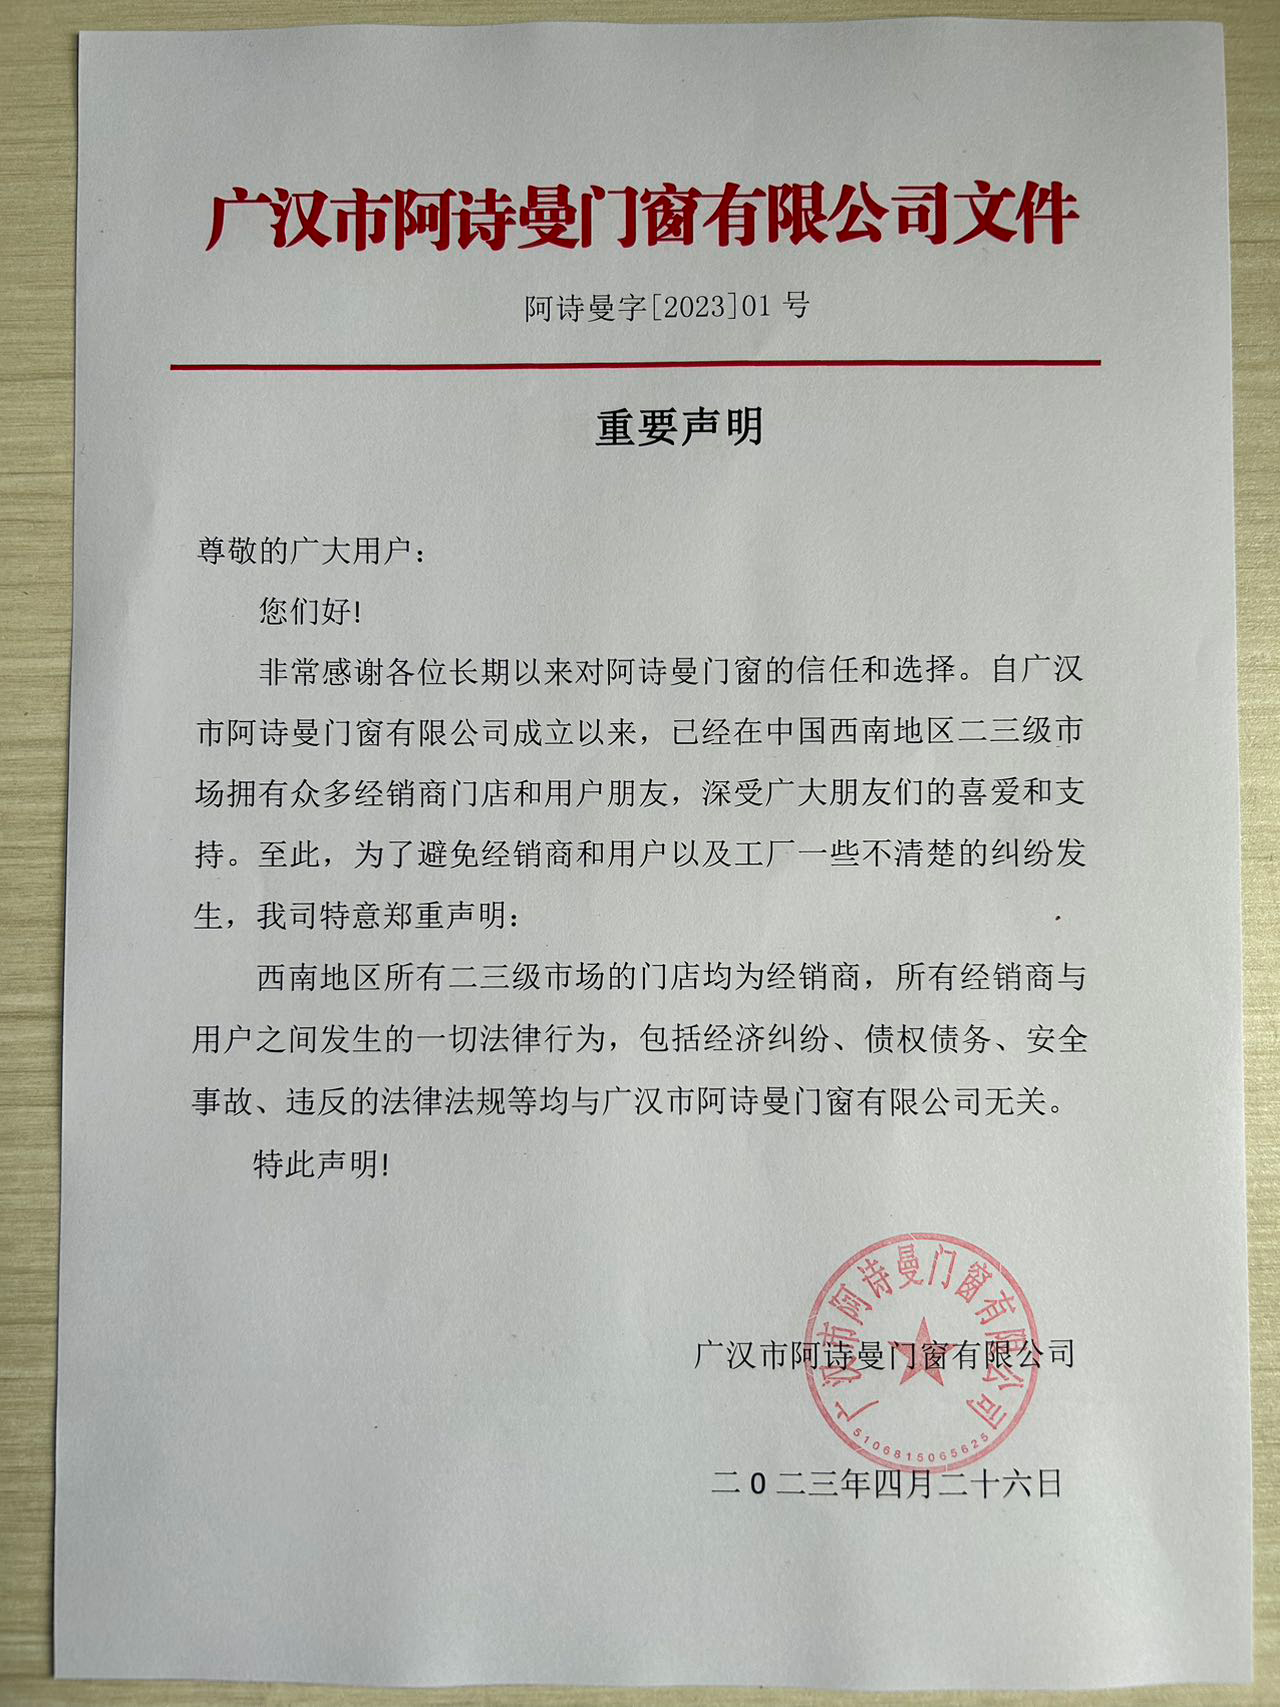 广汉阿诗曼门窗有限公司重要声明通知文件